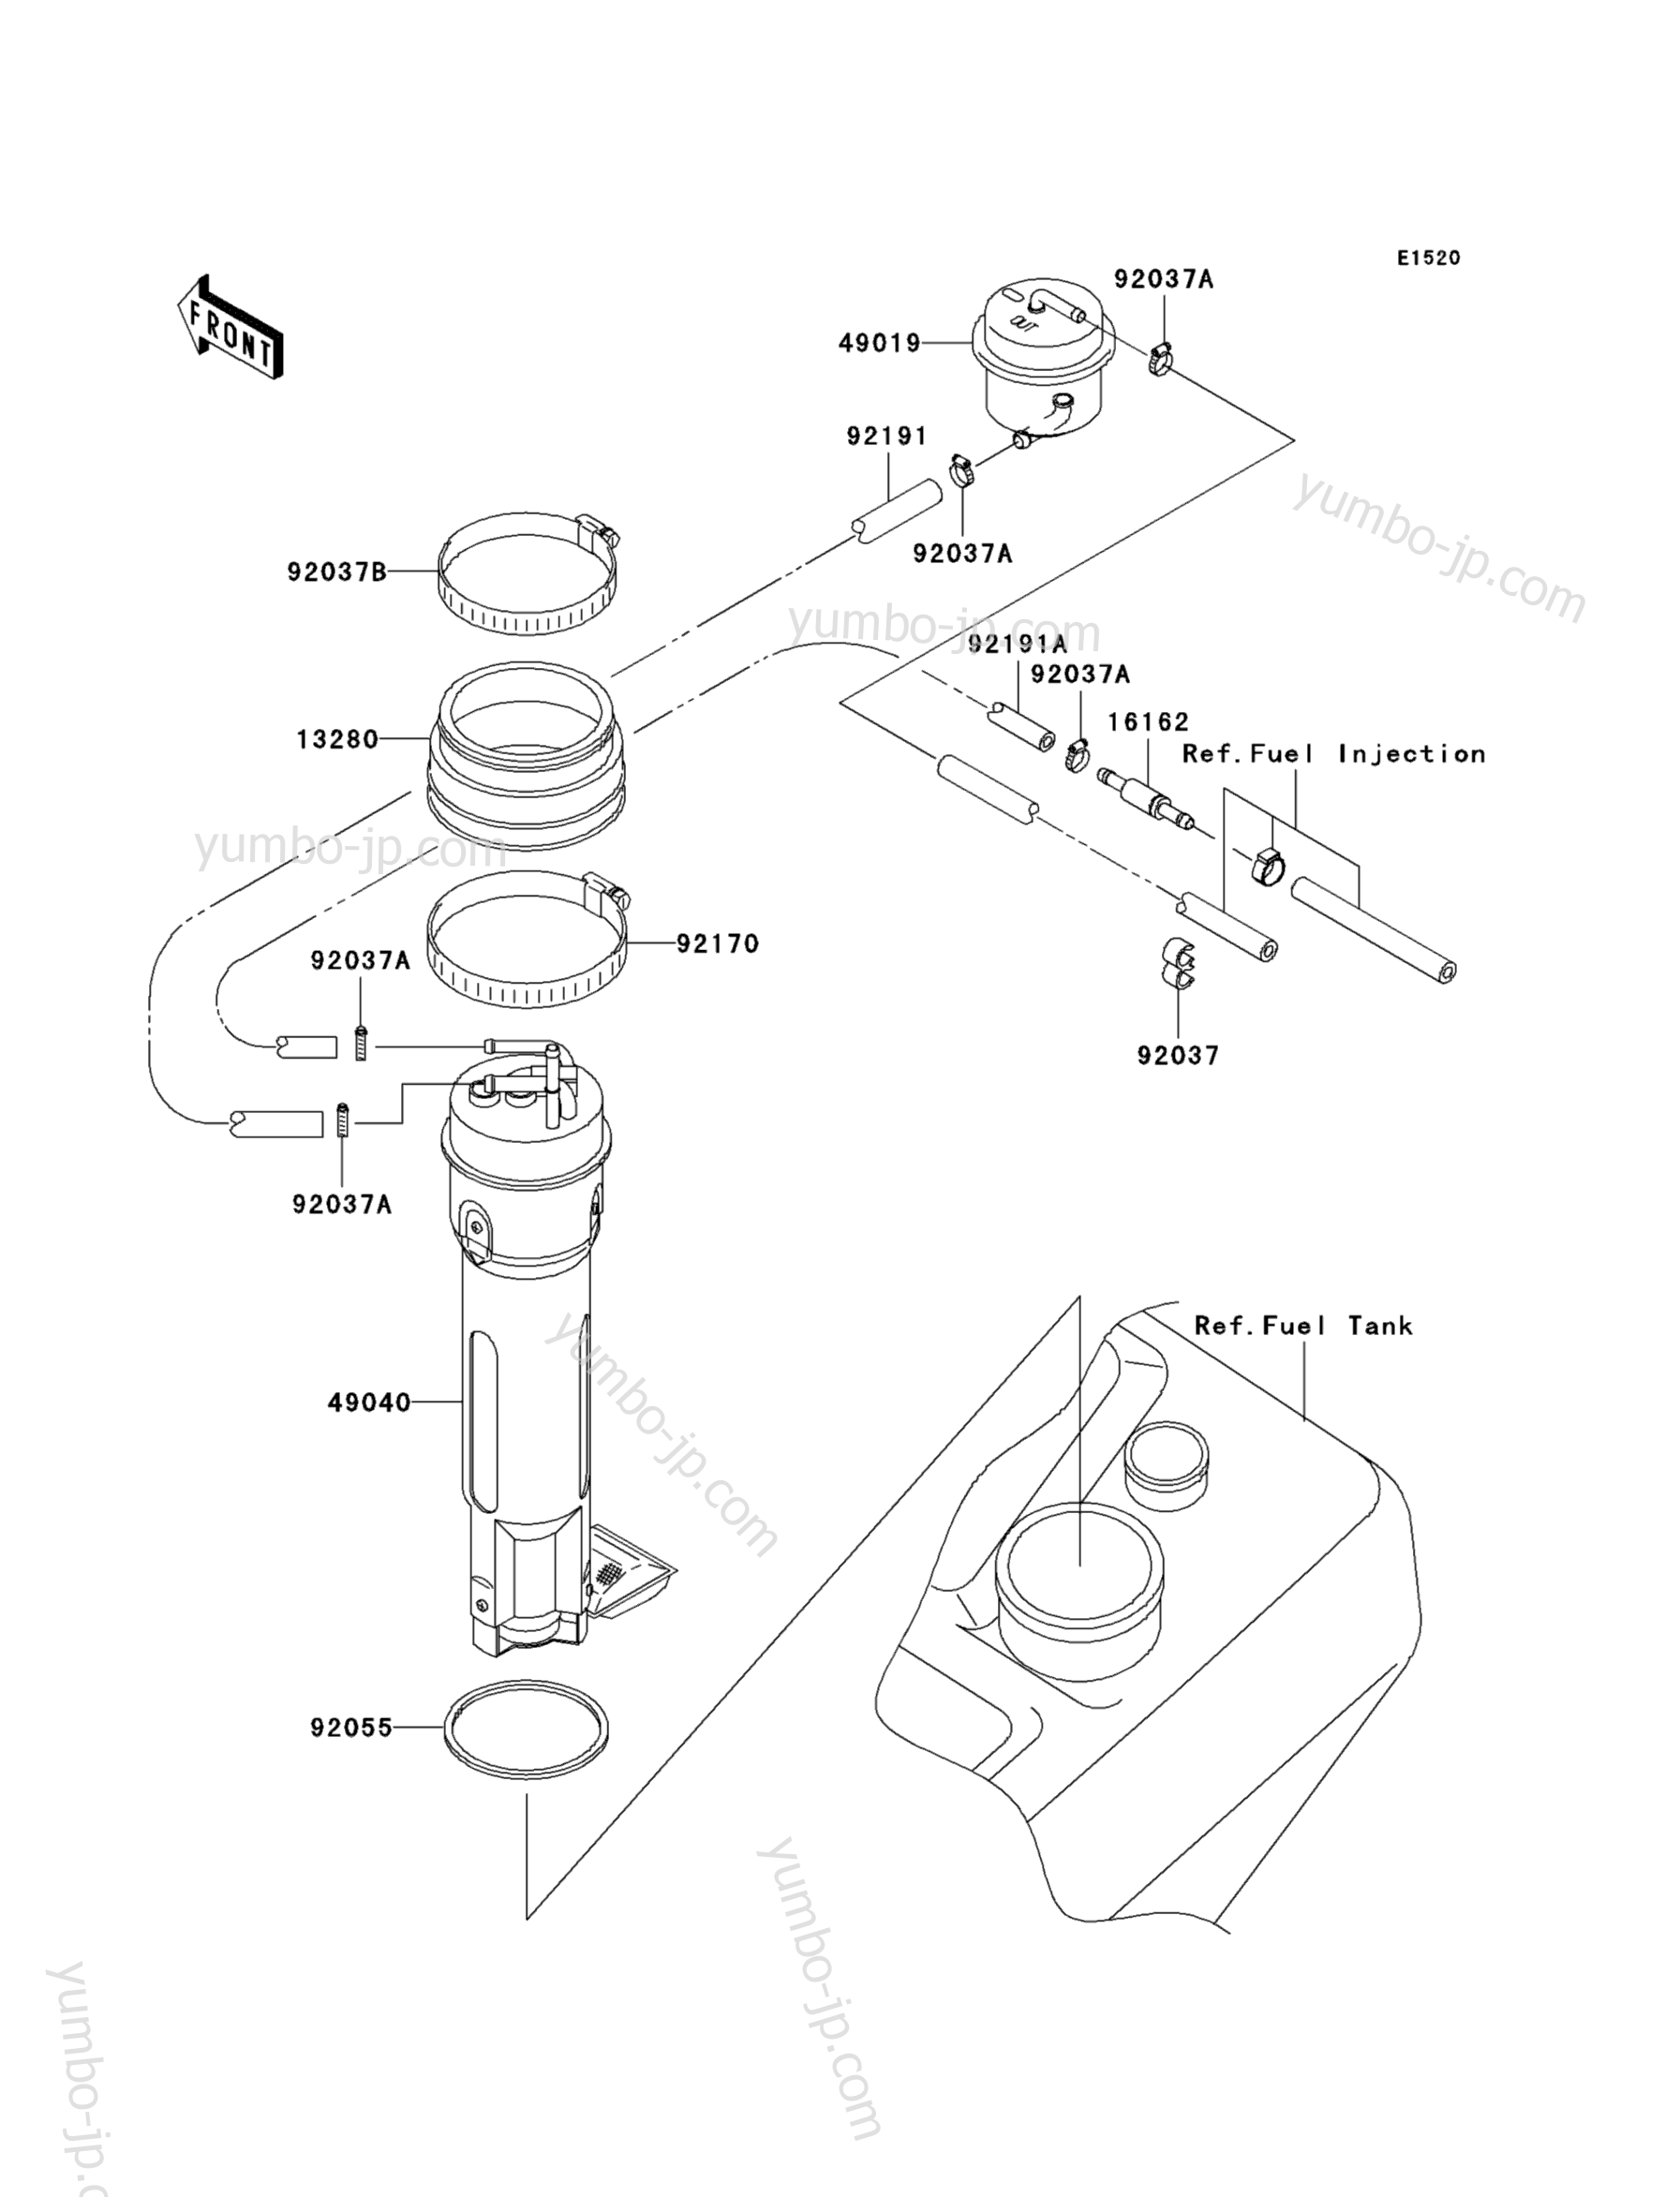 Топливный насос для гидроциклов KAWASAKI JET SKI ULTRA 130 D.I. (JH1100-B3) 2003 г.